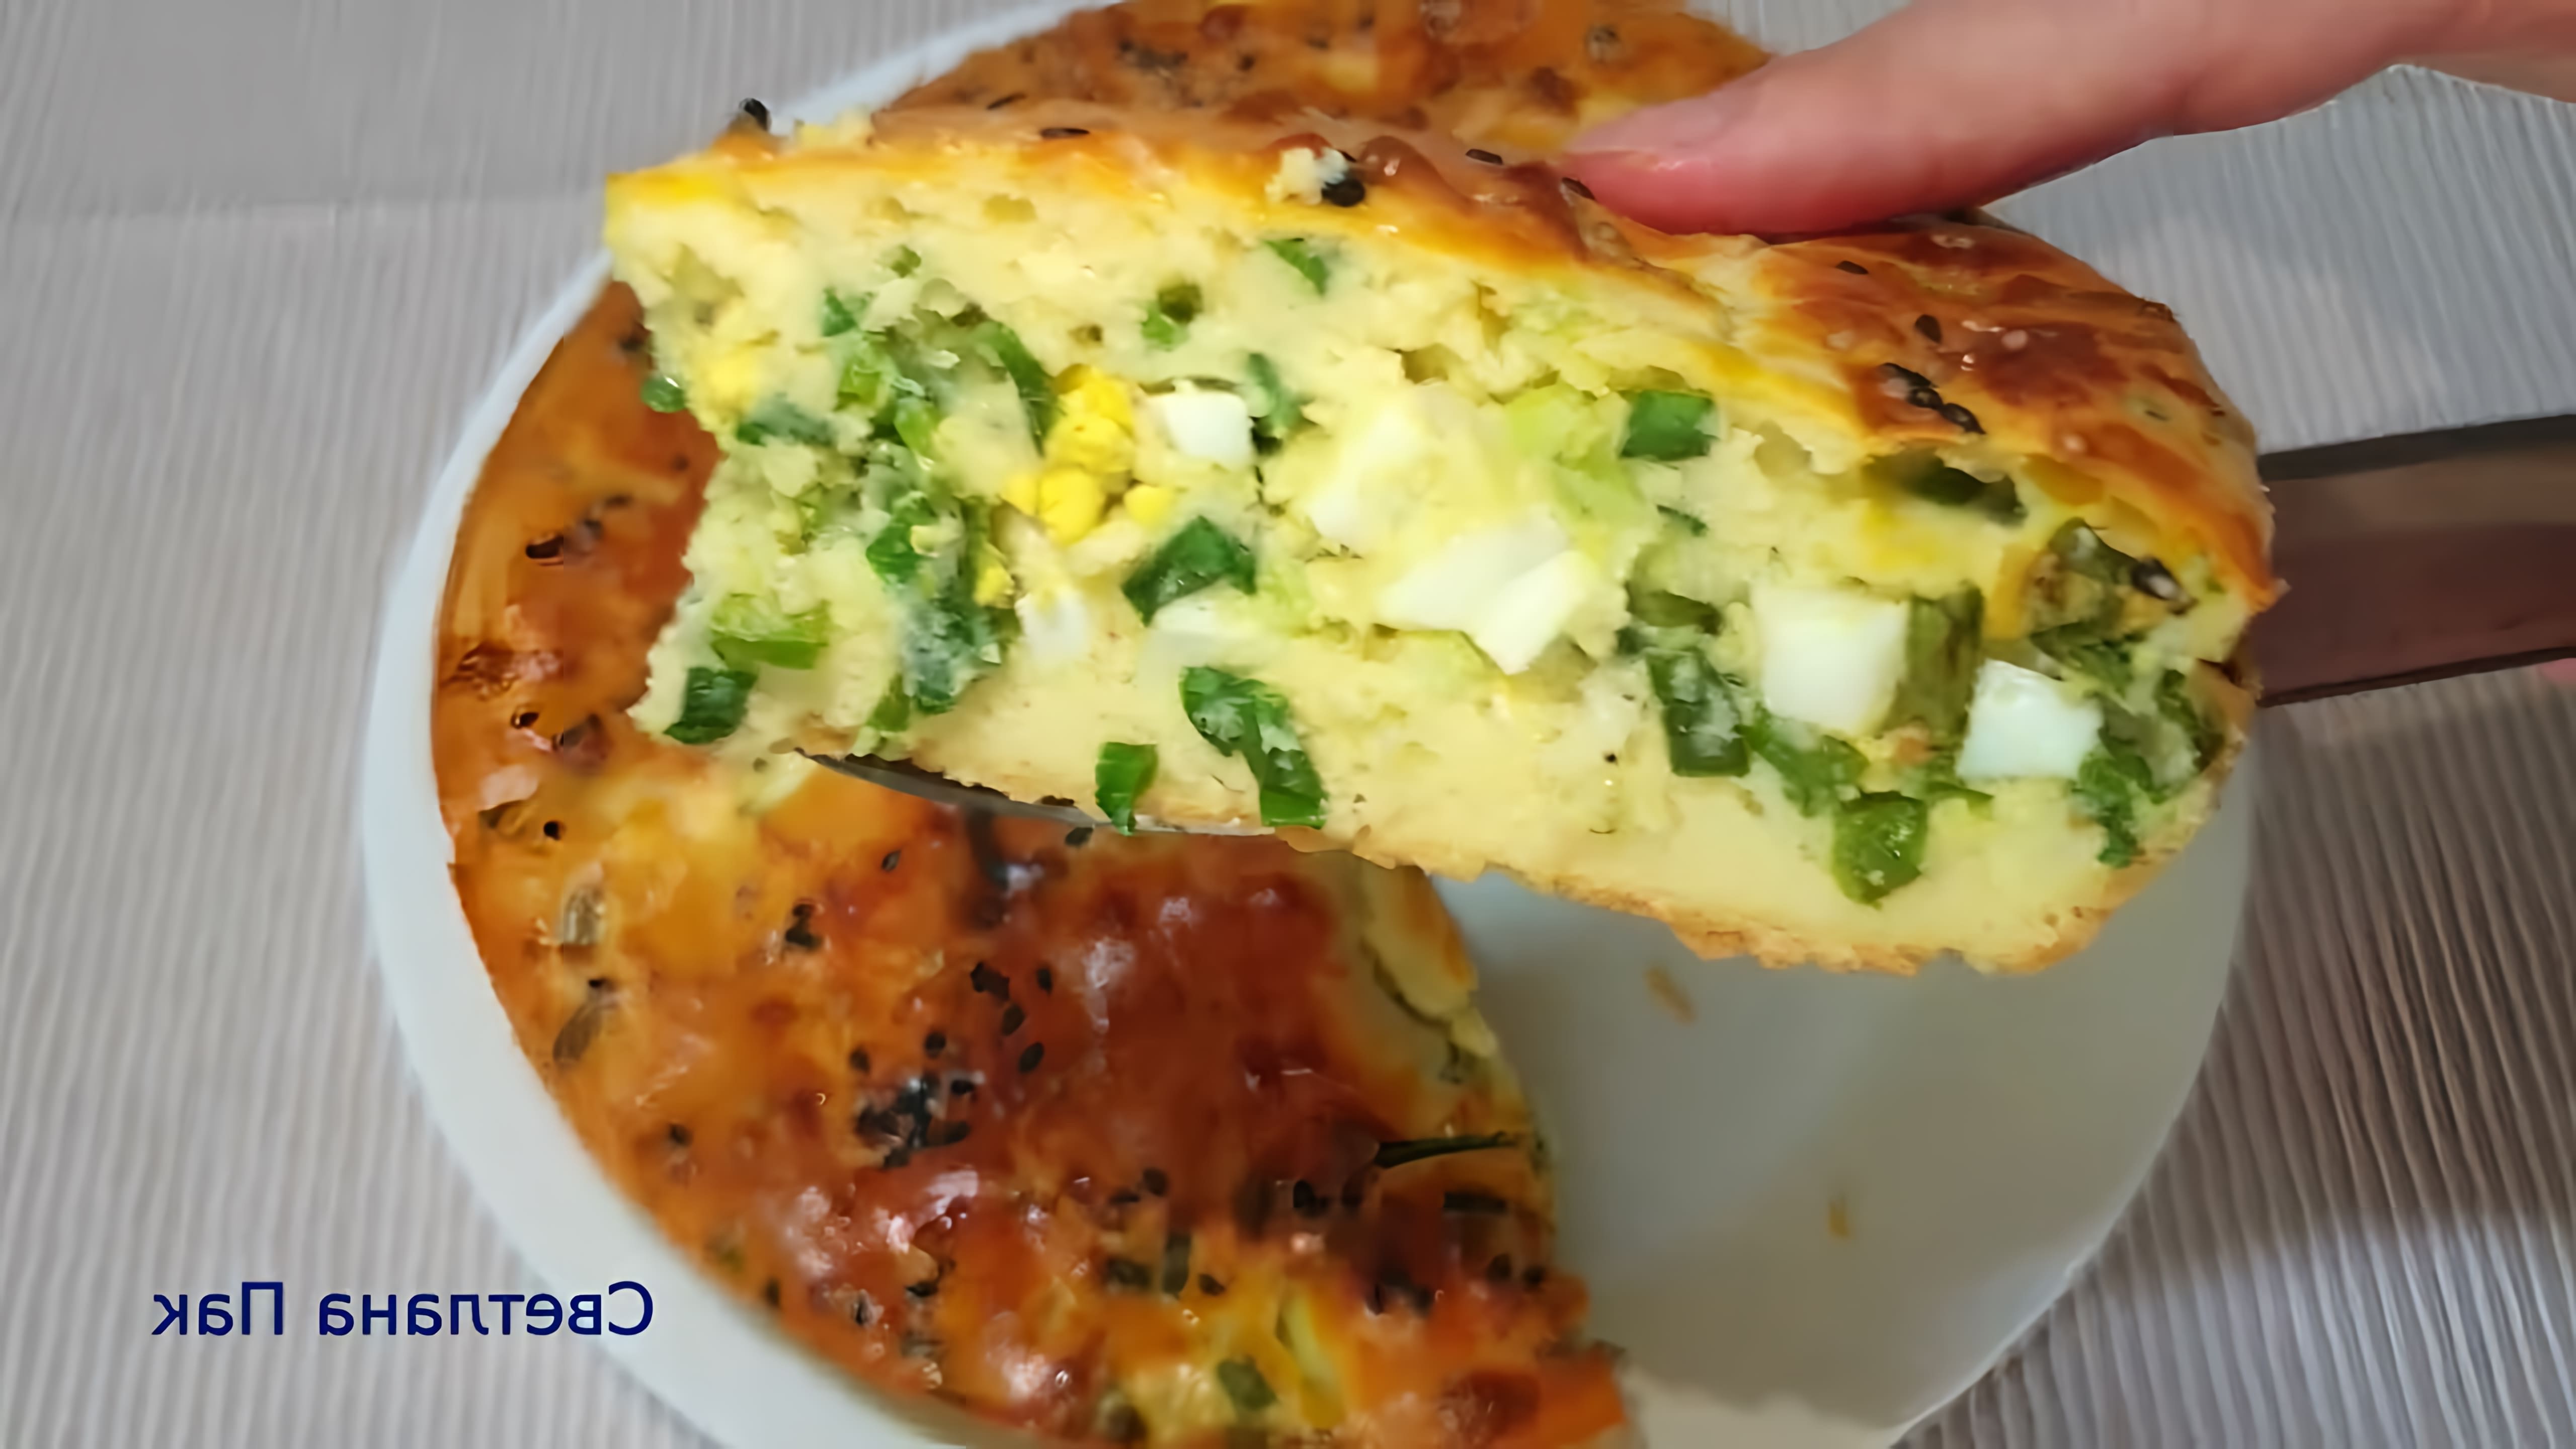 В этом видео демонстрируется процесс приготовления заливного пирога с яйцом и зеленым луком